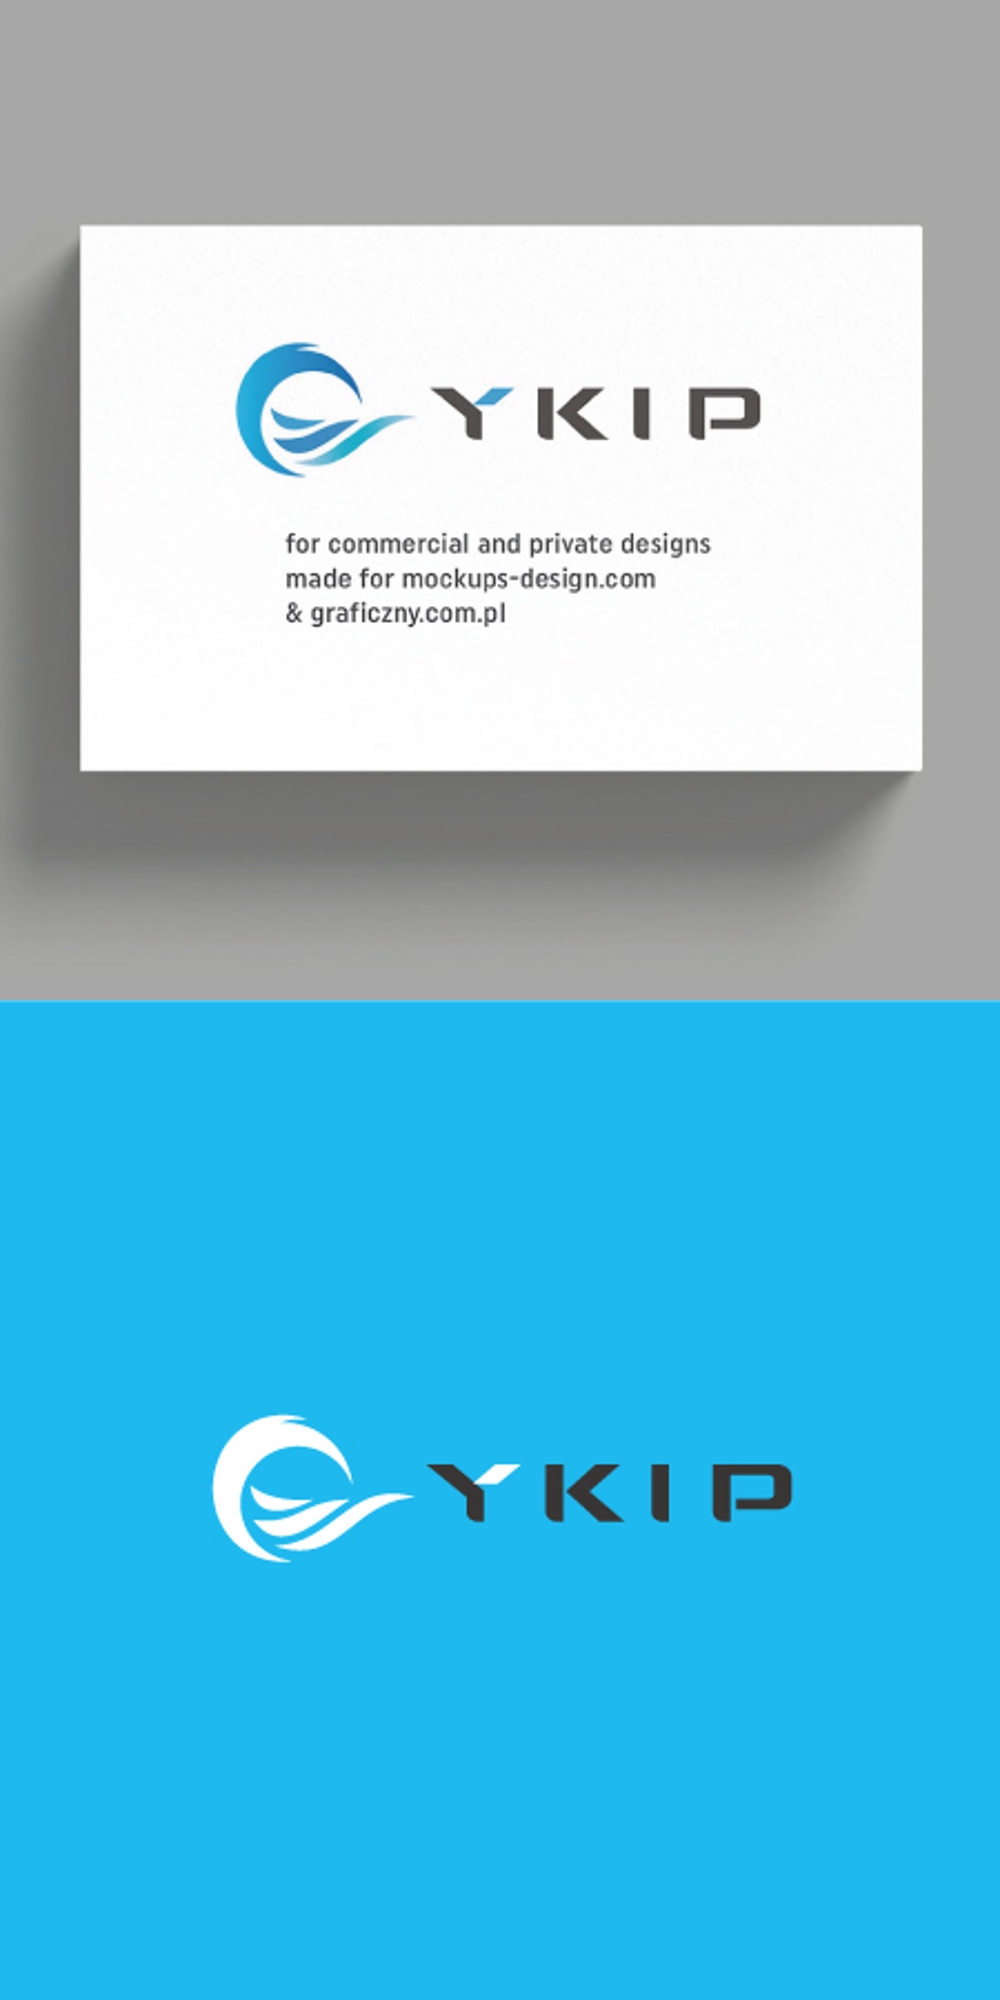 当社既存ロゴ＋当社略称「YKIP」4文字の組み合わせアレンジ